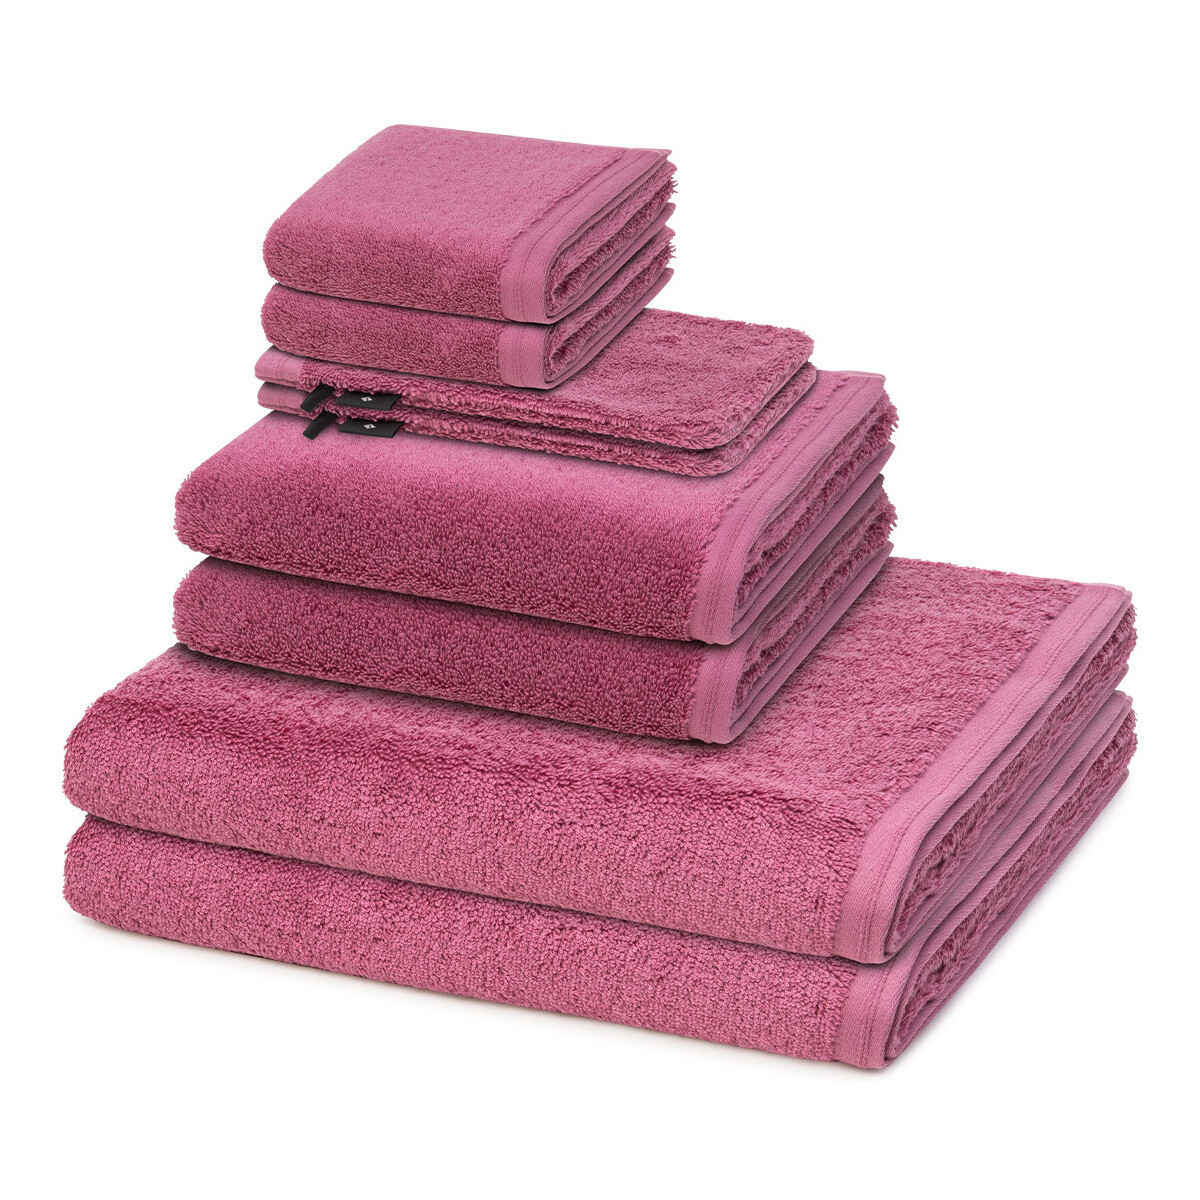 Home Handtuch und Waschlappen Vossen 8er Pack Vegan Life Rosa